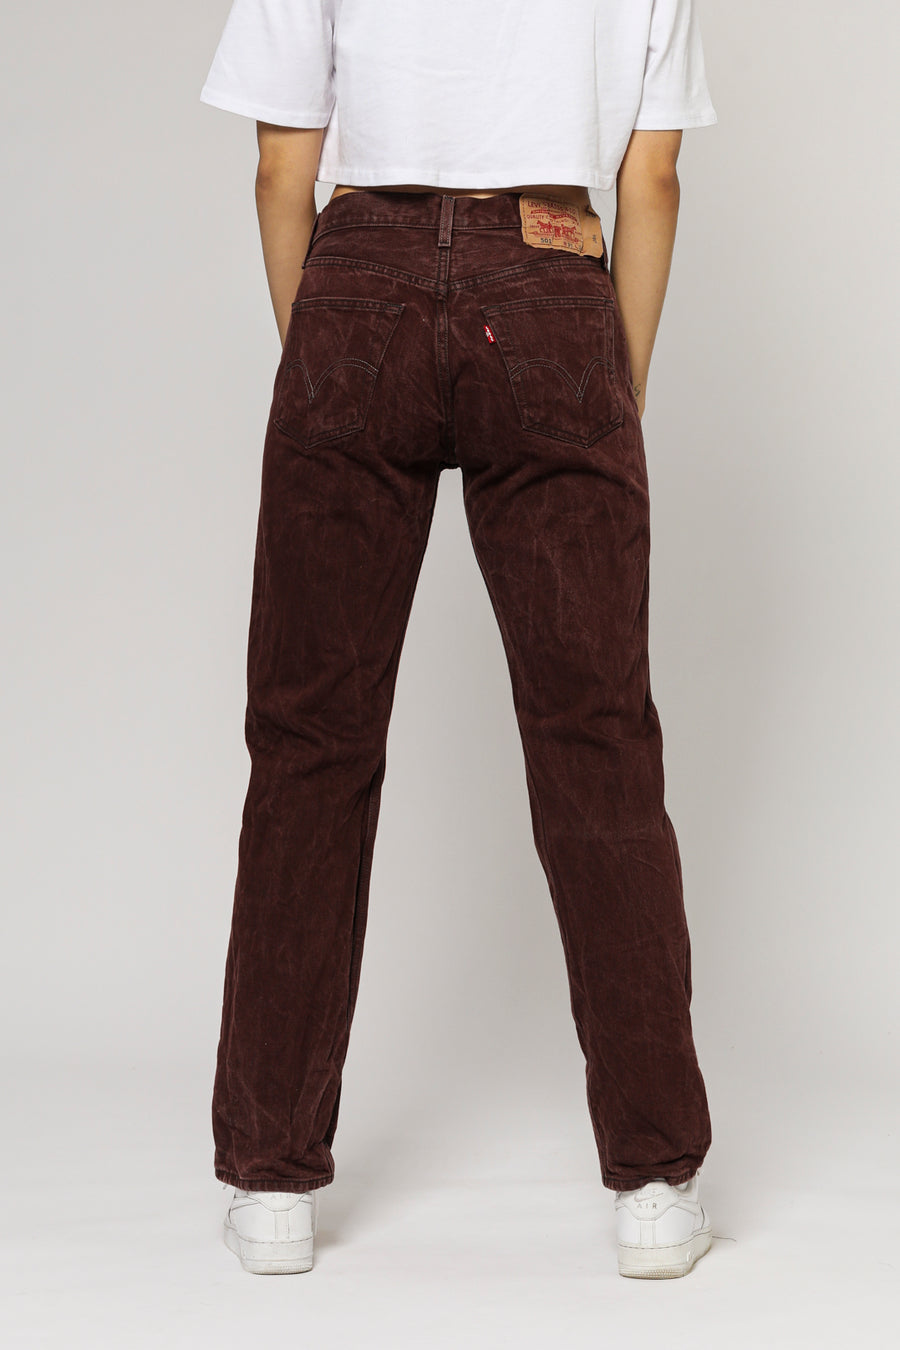 Vintage Levi's Jeans - W32